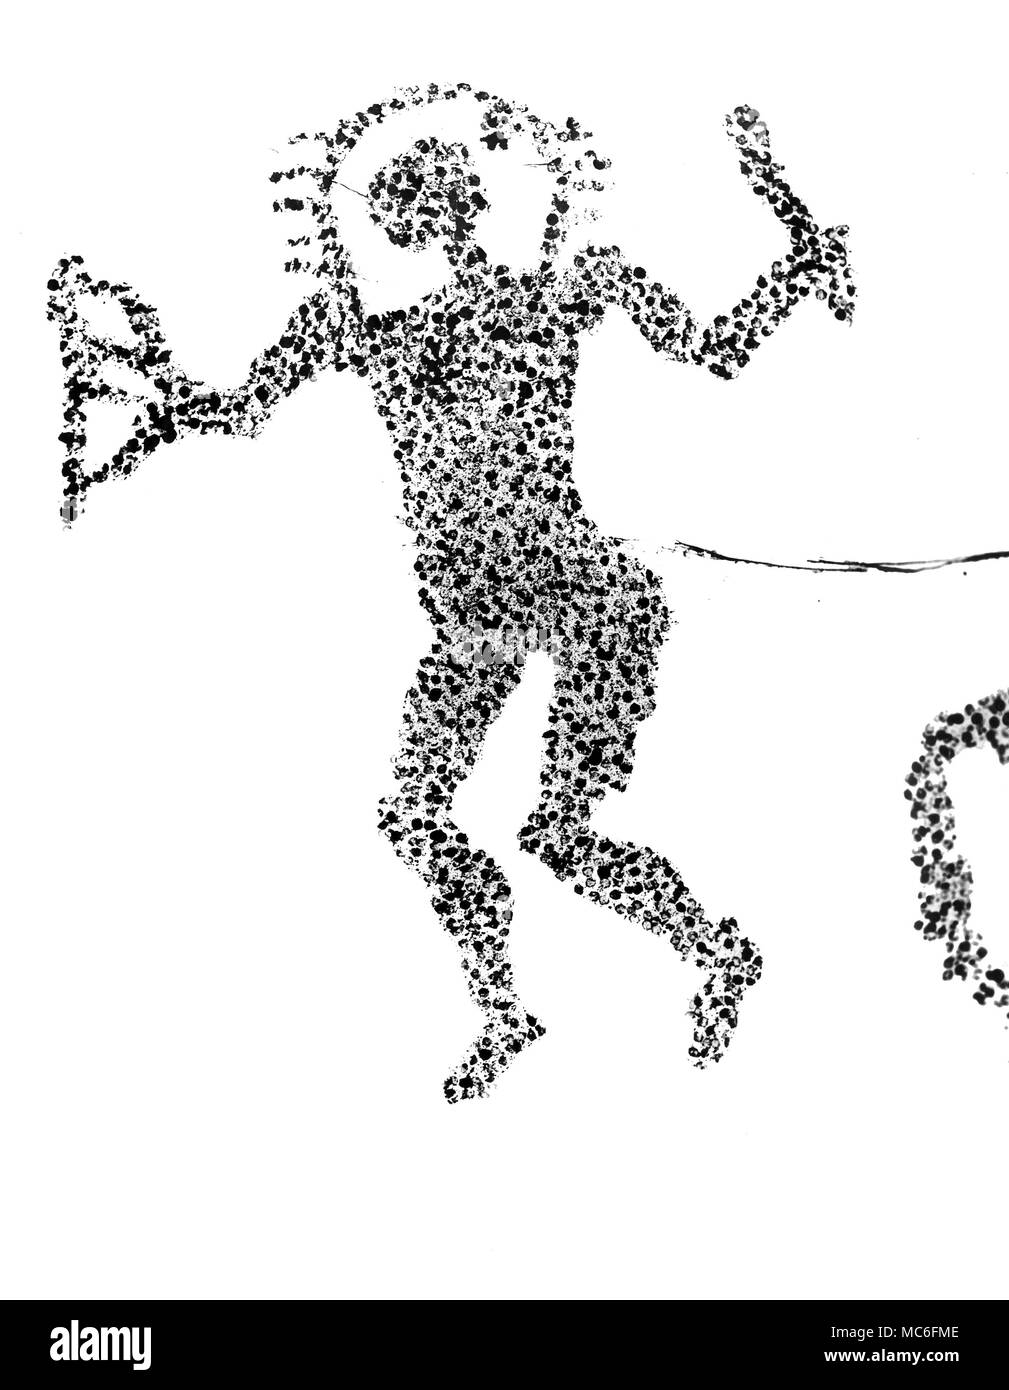 Il cosiddetto astronauta dalla serie di incisioni rupestri preistoriche al di sopra del comune di Capo di Ponte, Italia. Artwork basato su fotografie. Foto Stock